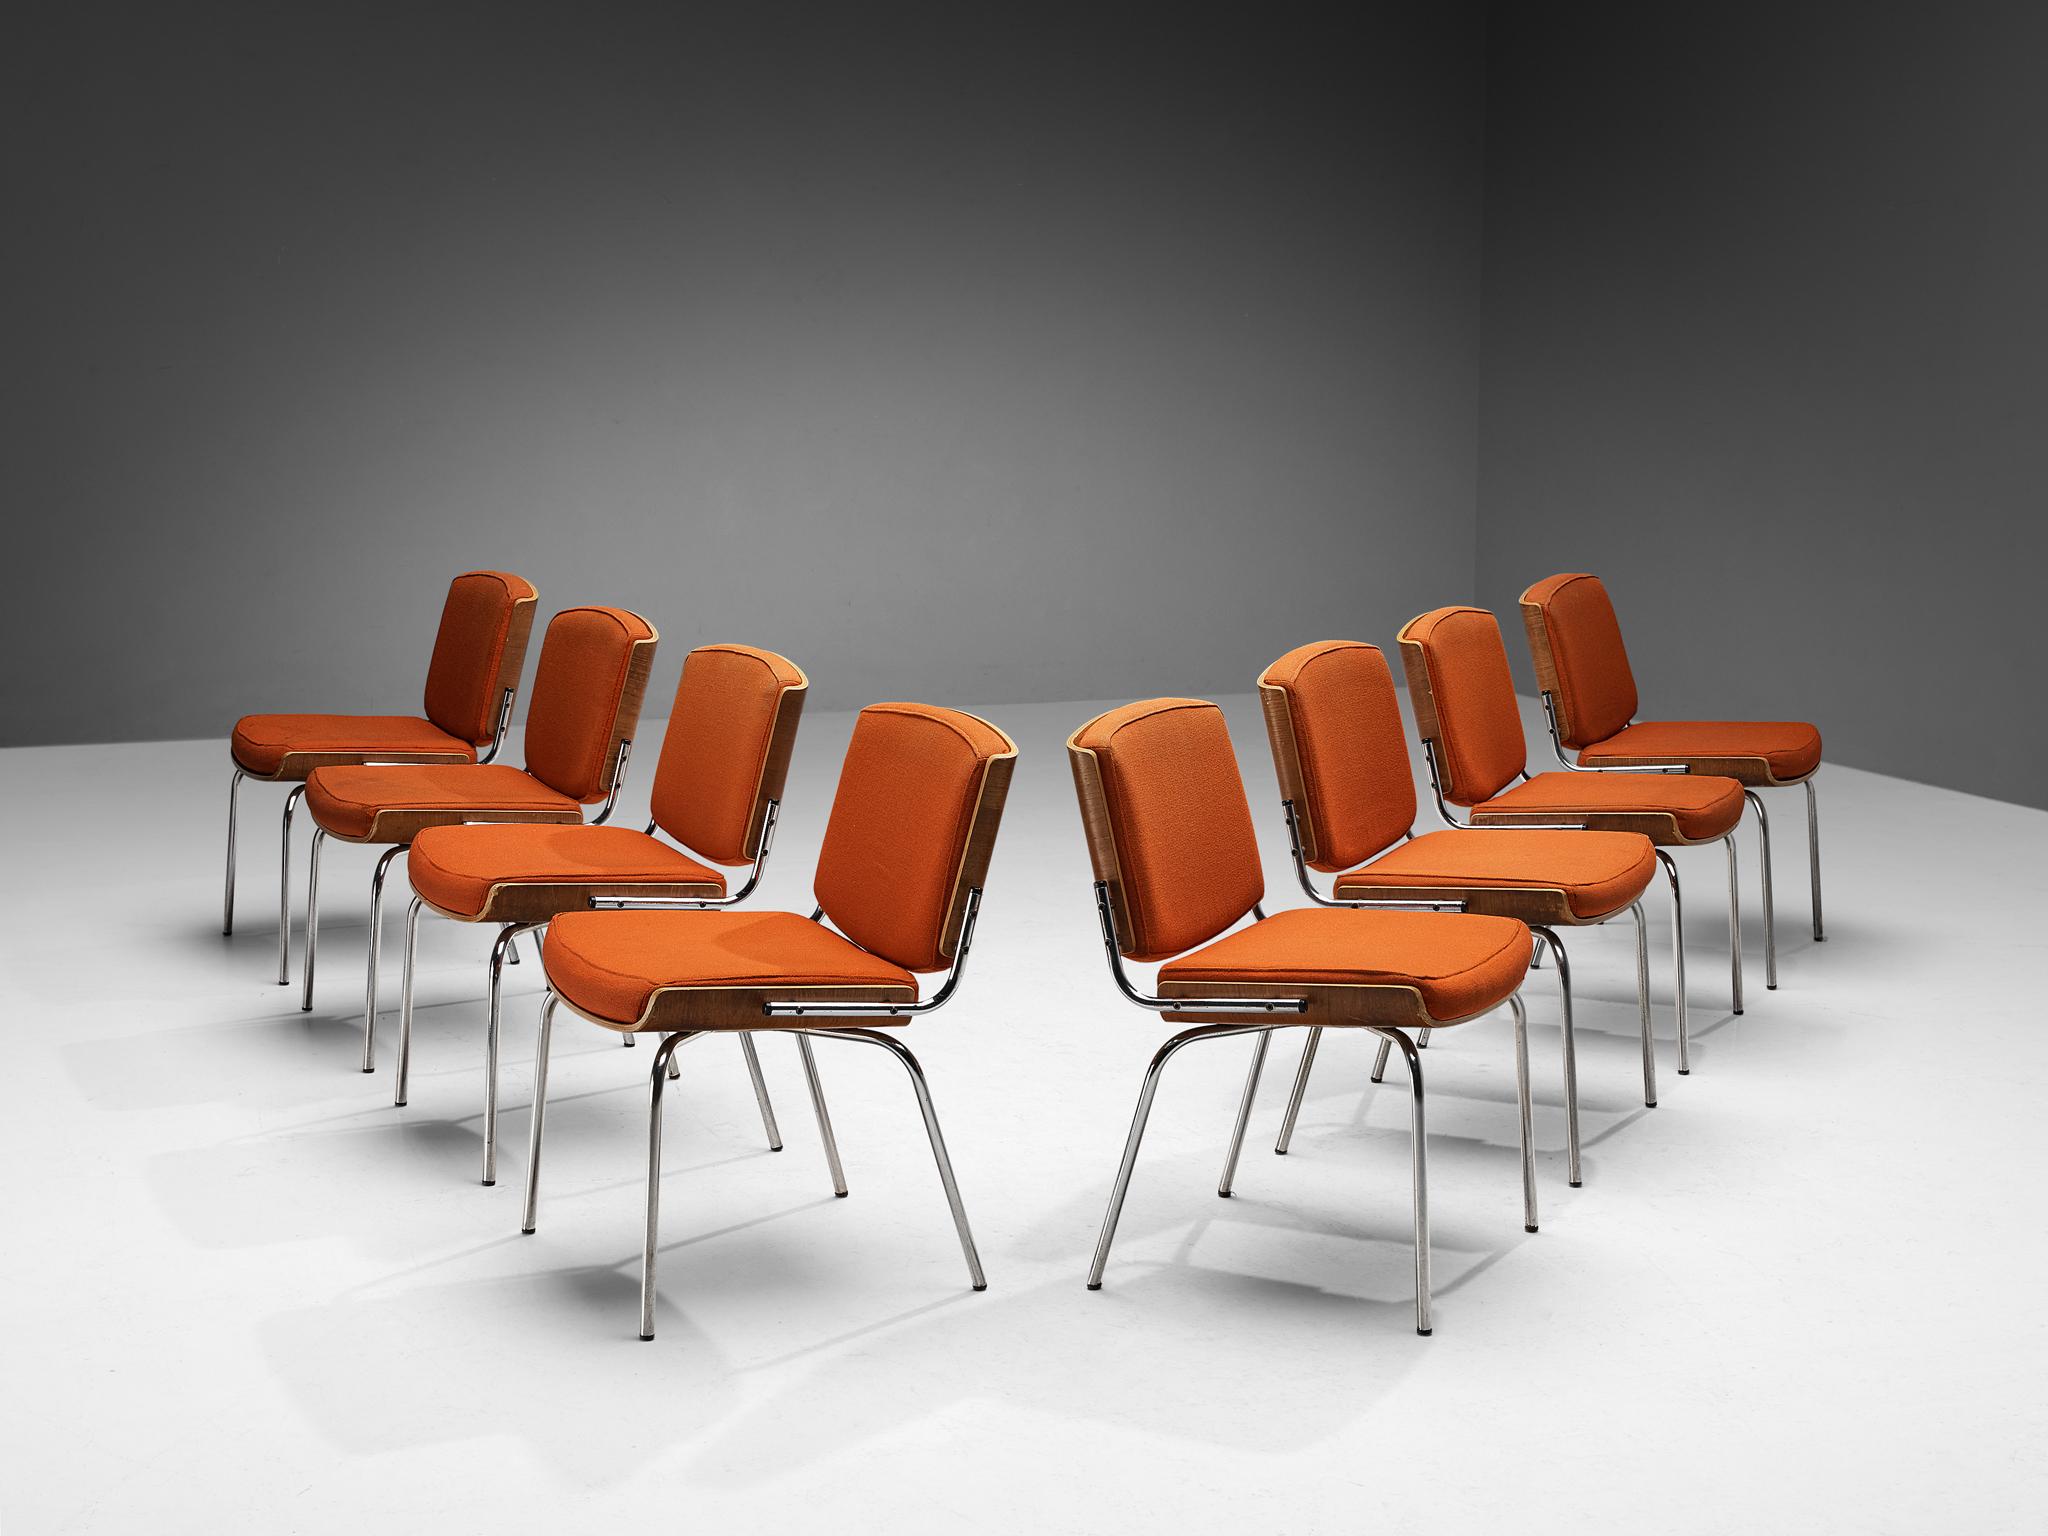 Duba Møbelindustri, Satz von acht Esszimmerstühlen, gebogenes Sperrholz Eiche, verchromtes Metall, Stoff Dänemark, 1970er Jahre. 

Satz von acht dänischen Esszimmerstühlen aus den 1970er Jahren. Die gesamte Konstruktion des Rahmens basiert auf